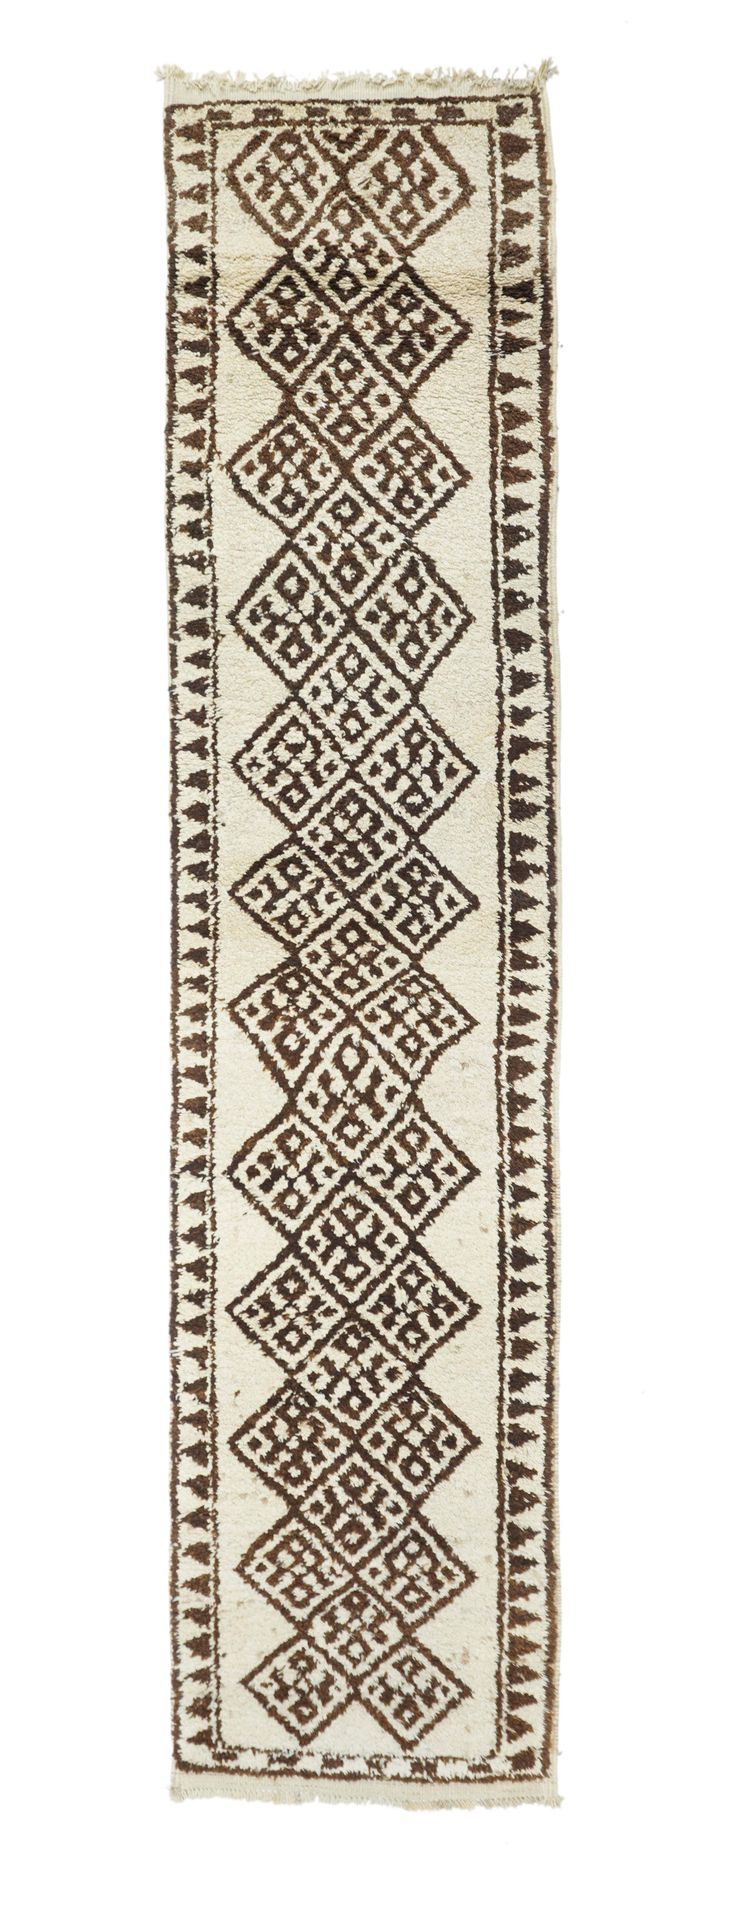 Null Marokkanischer Teppich, 2'8" x 11'10" ( 0.81 x 3.61 M )